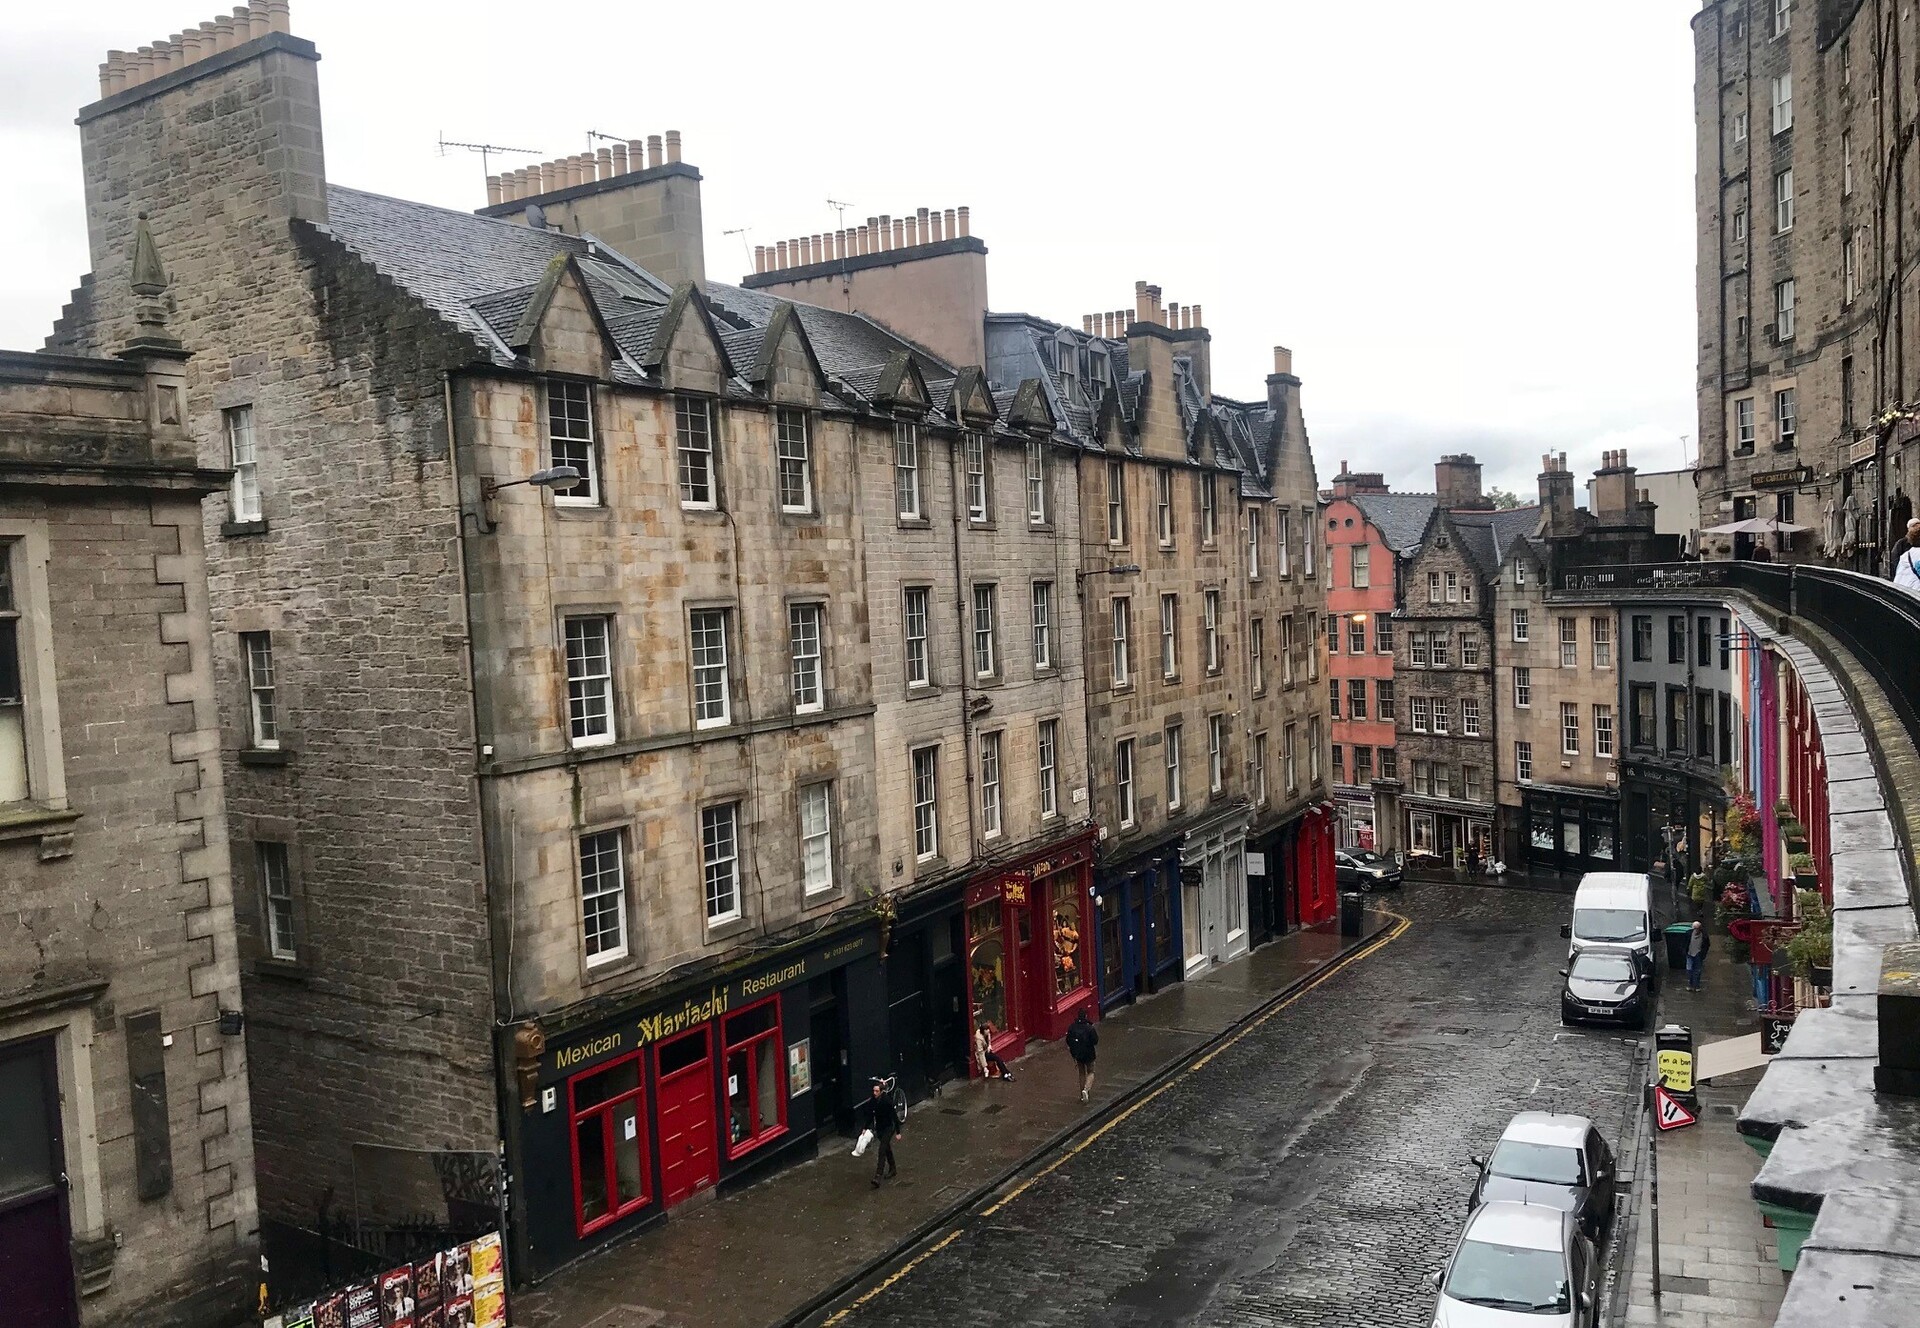 Victoria Street, em Edimburgo, foi a inspiração para o Diagon Alley, de Harry Potter